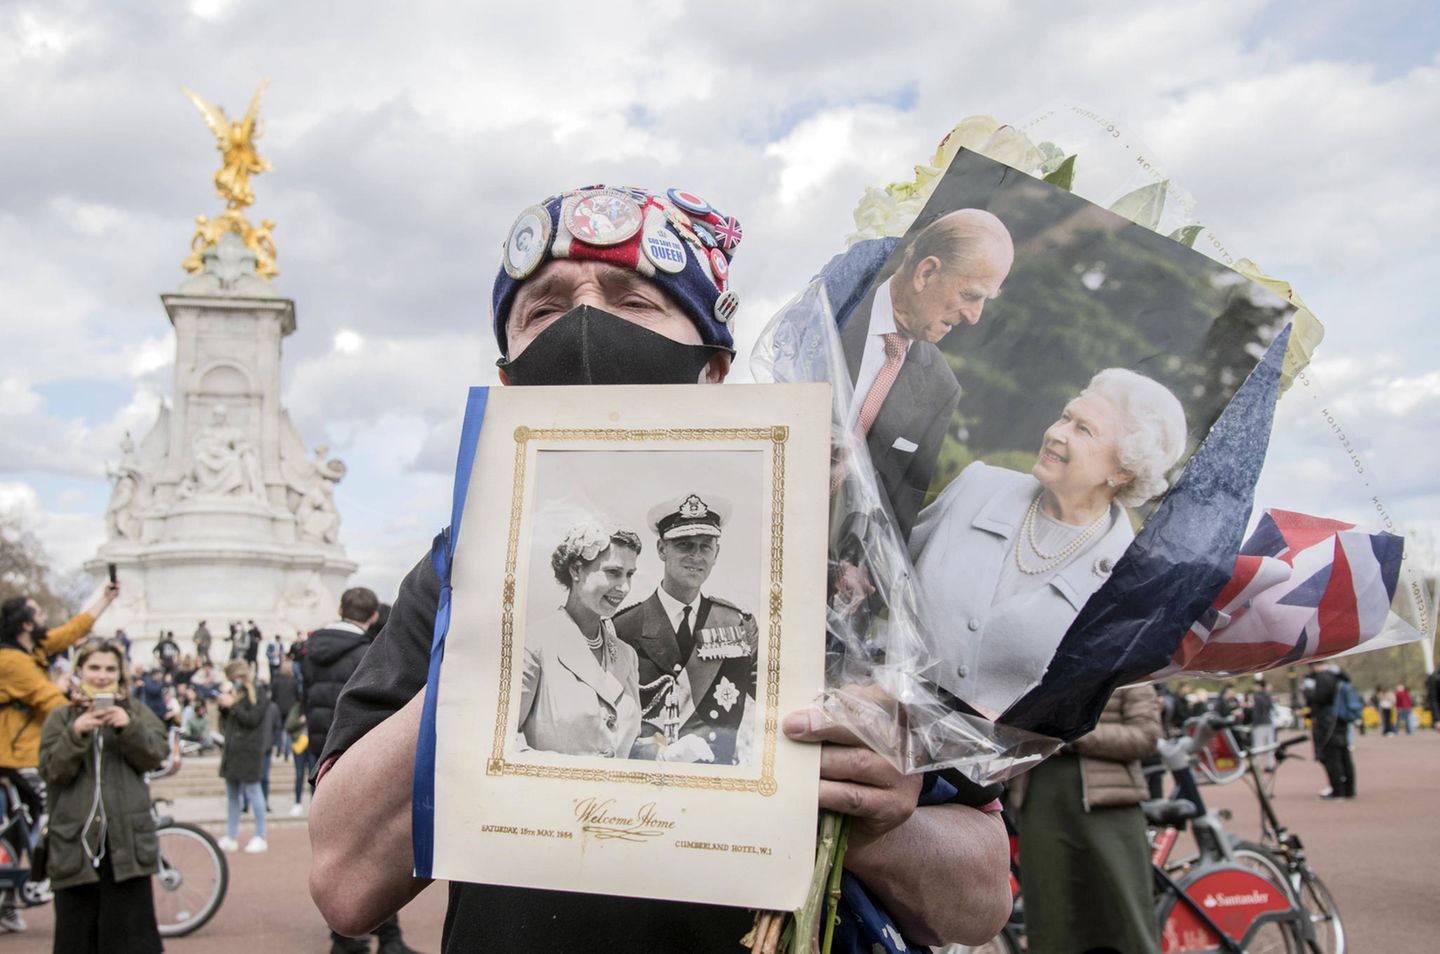 Mit Blumen und Bildern von Prinz Philip und Queen Elizabeth in der Hand zieht es diesen Londoner vor den Palast. Über den Tod des Herzogs von Edinburgh zeigt er sich sichtlich erschüttert.